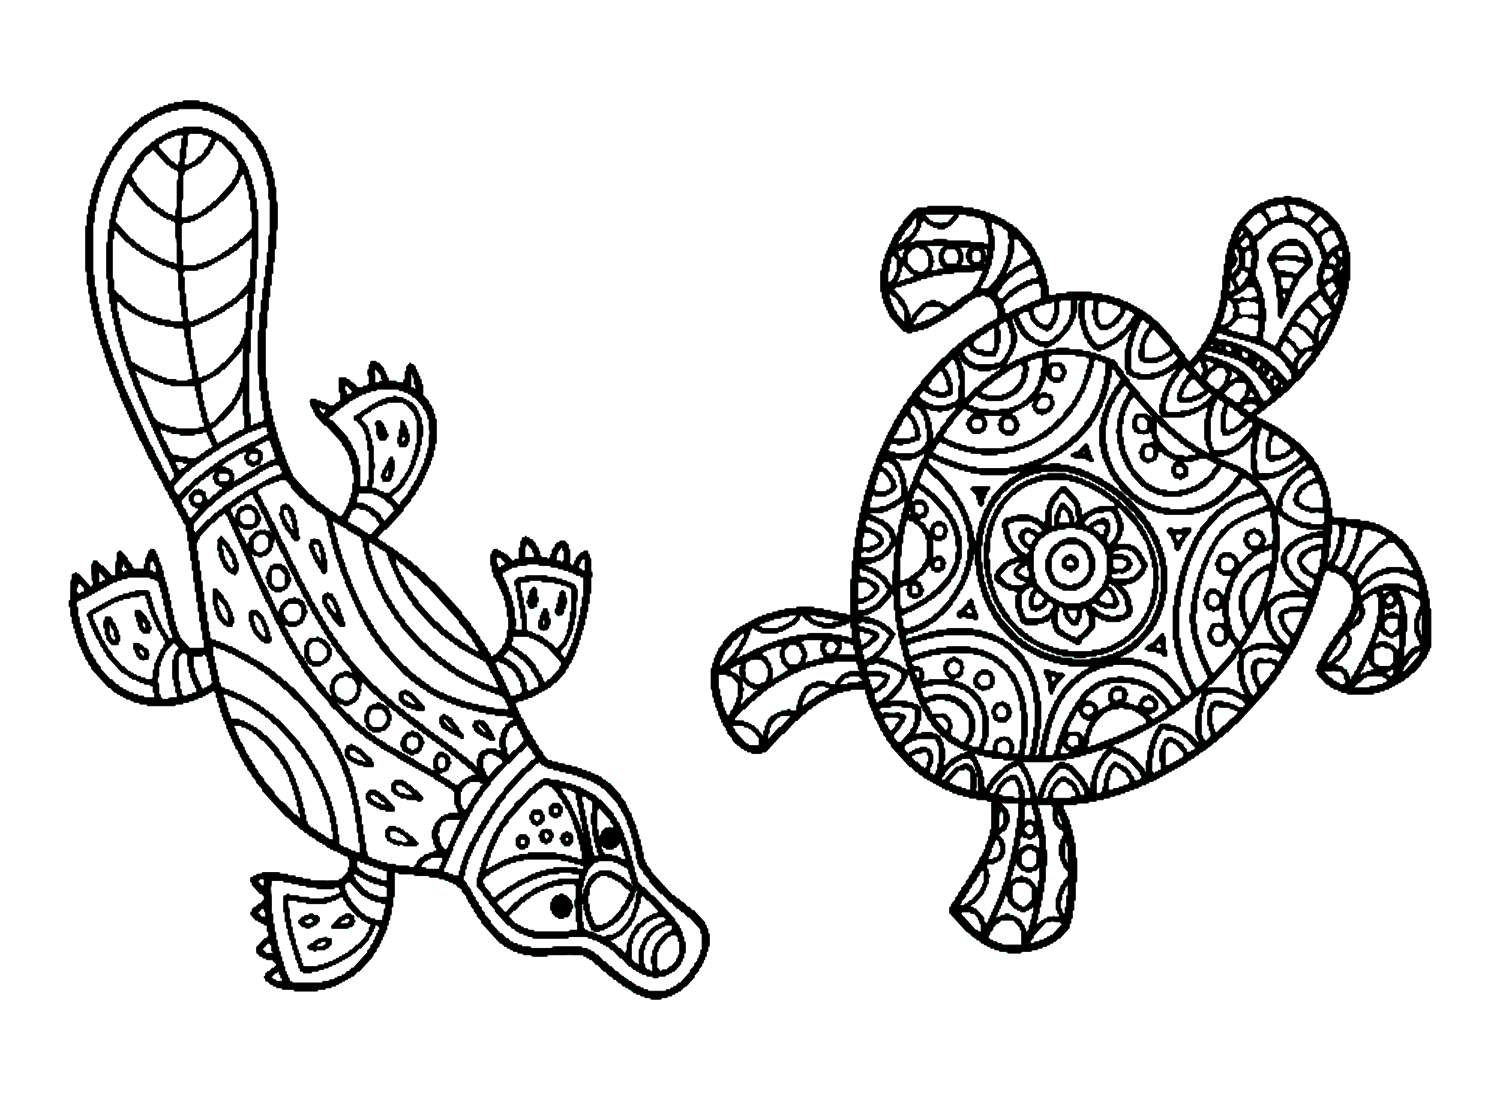 曼陀罗鸭嘴兽和鸭嘴兽中的乌龟